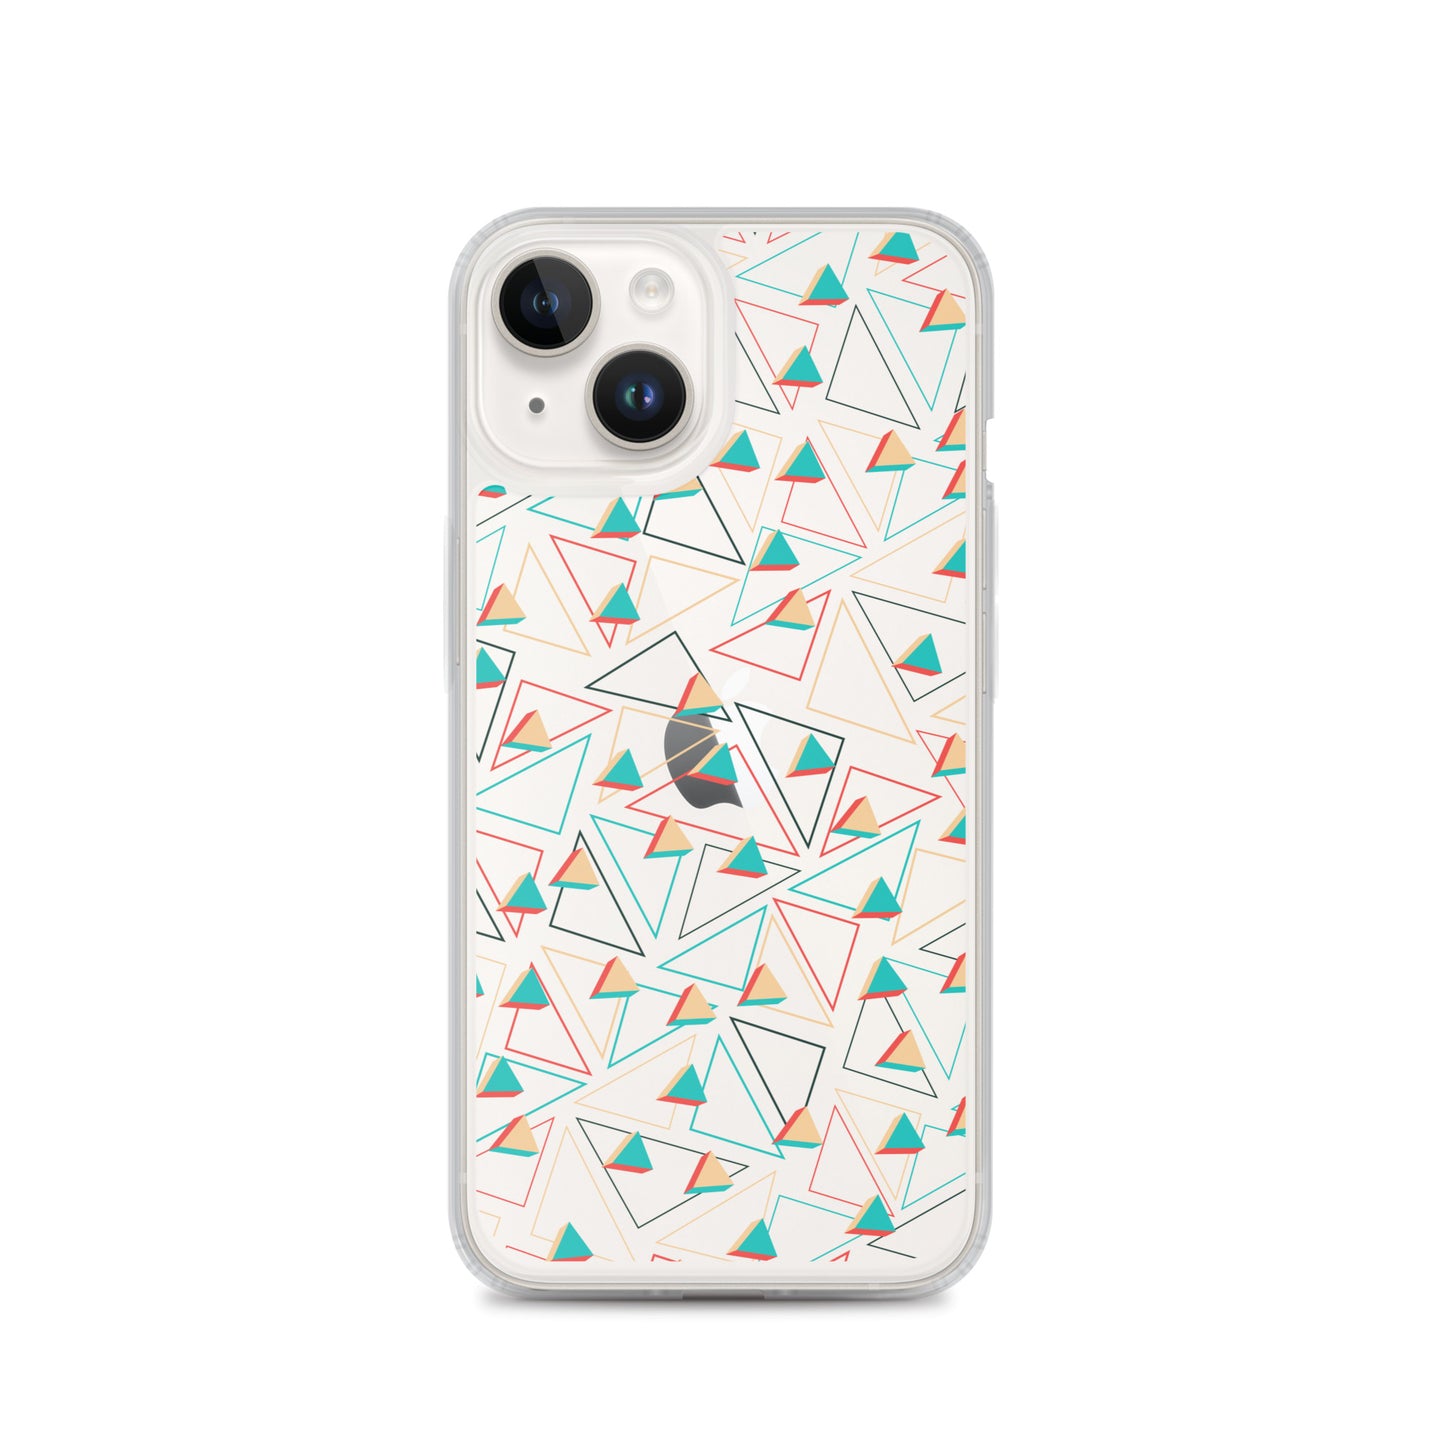 Coque et skin adhésive iPhone transparentes confites triangulaires